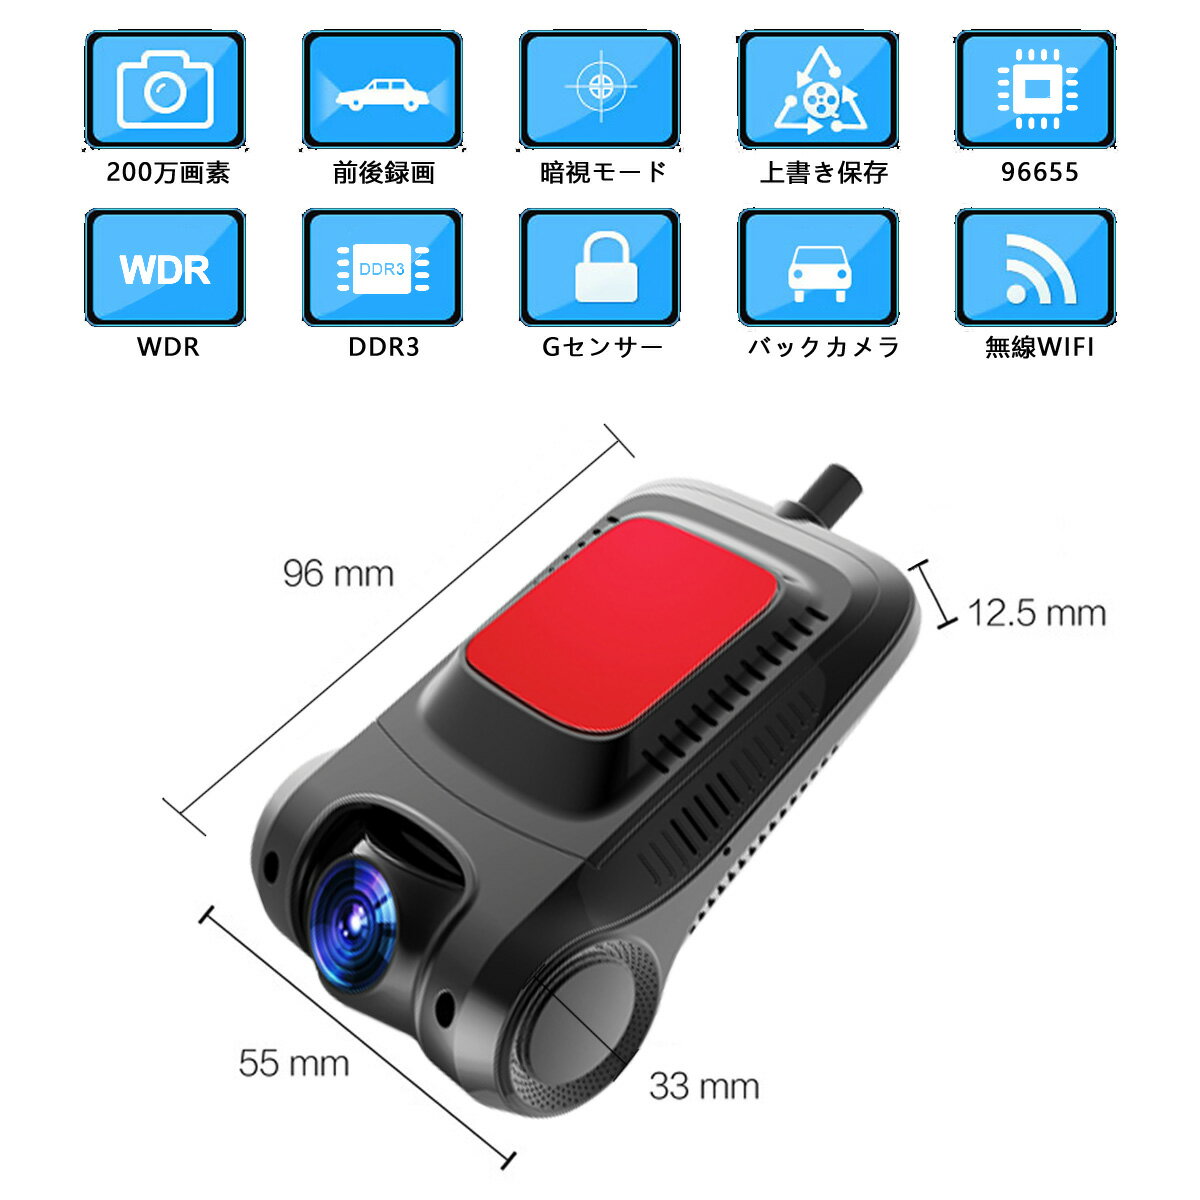 TOYOTA マークII シリーズ ドライブレコーダー バックカメラセット MicroSDカード32GB同梱2020年モデル あおり運転対策2K 200万画素 1080P ミラー隠しタイプ 無線Wi-Fi Gセンサー 6ヶ月保証